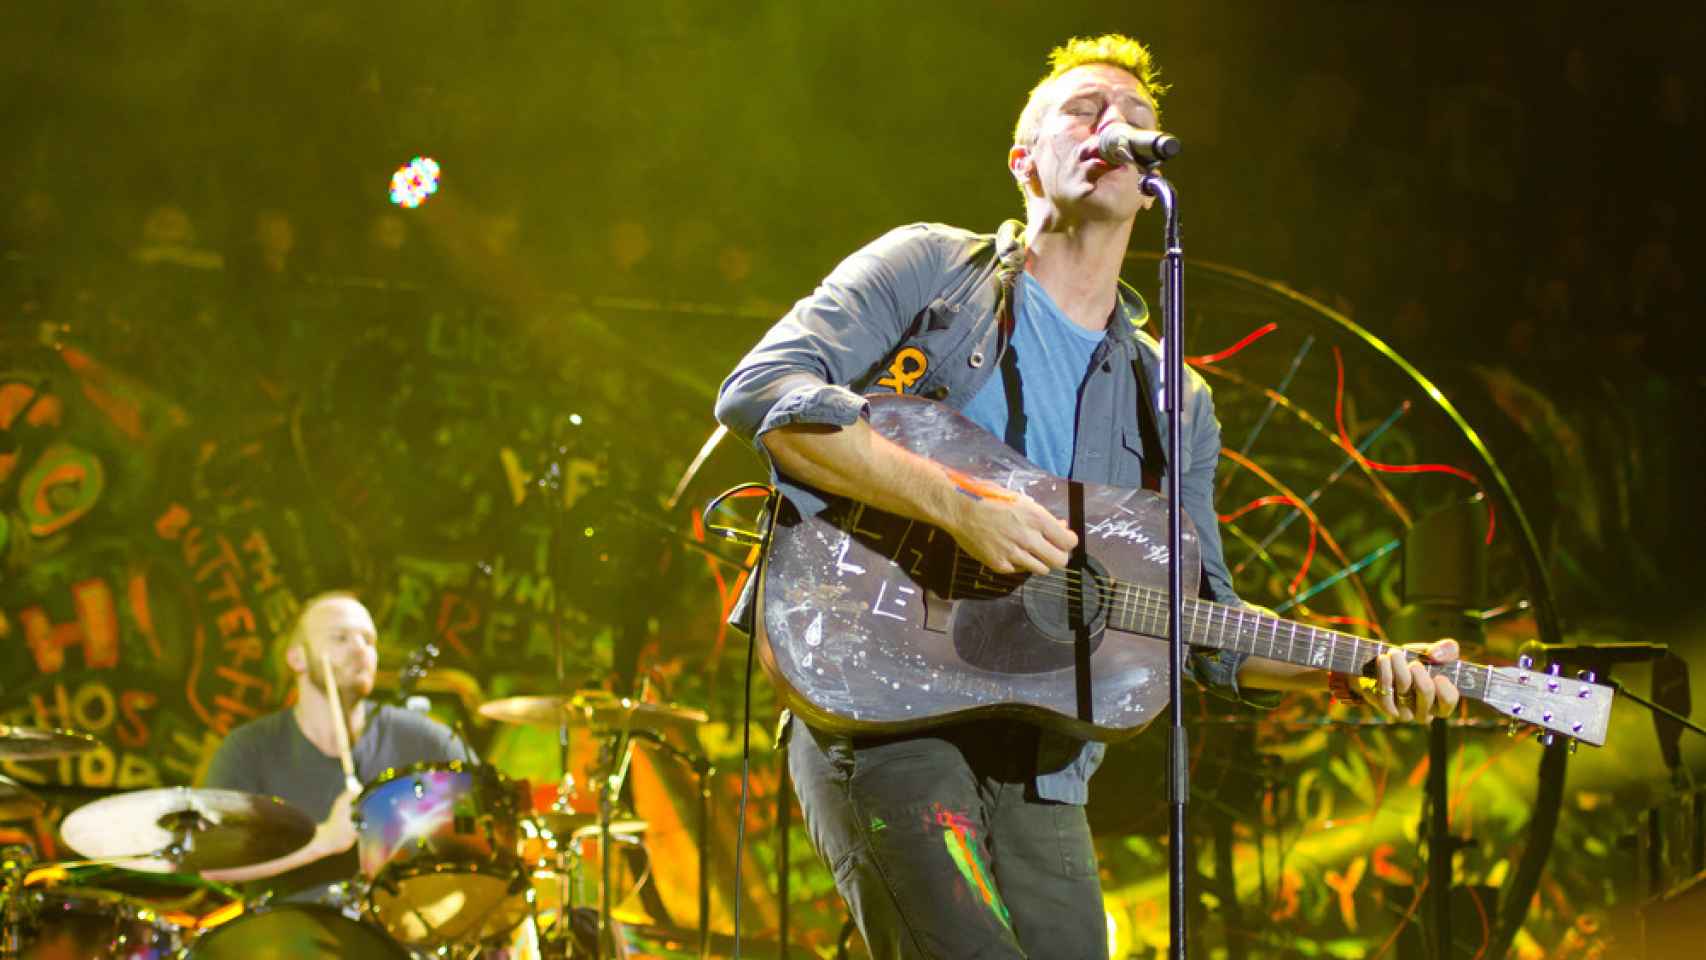 La banda británica Coldplay actuando en directo. Shutterstock